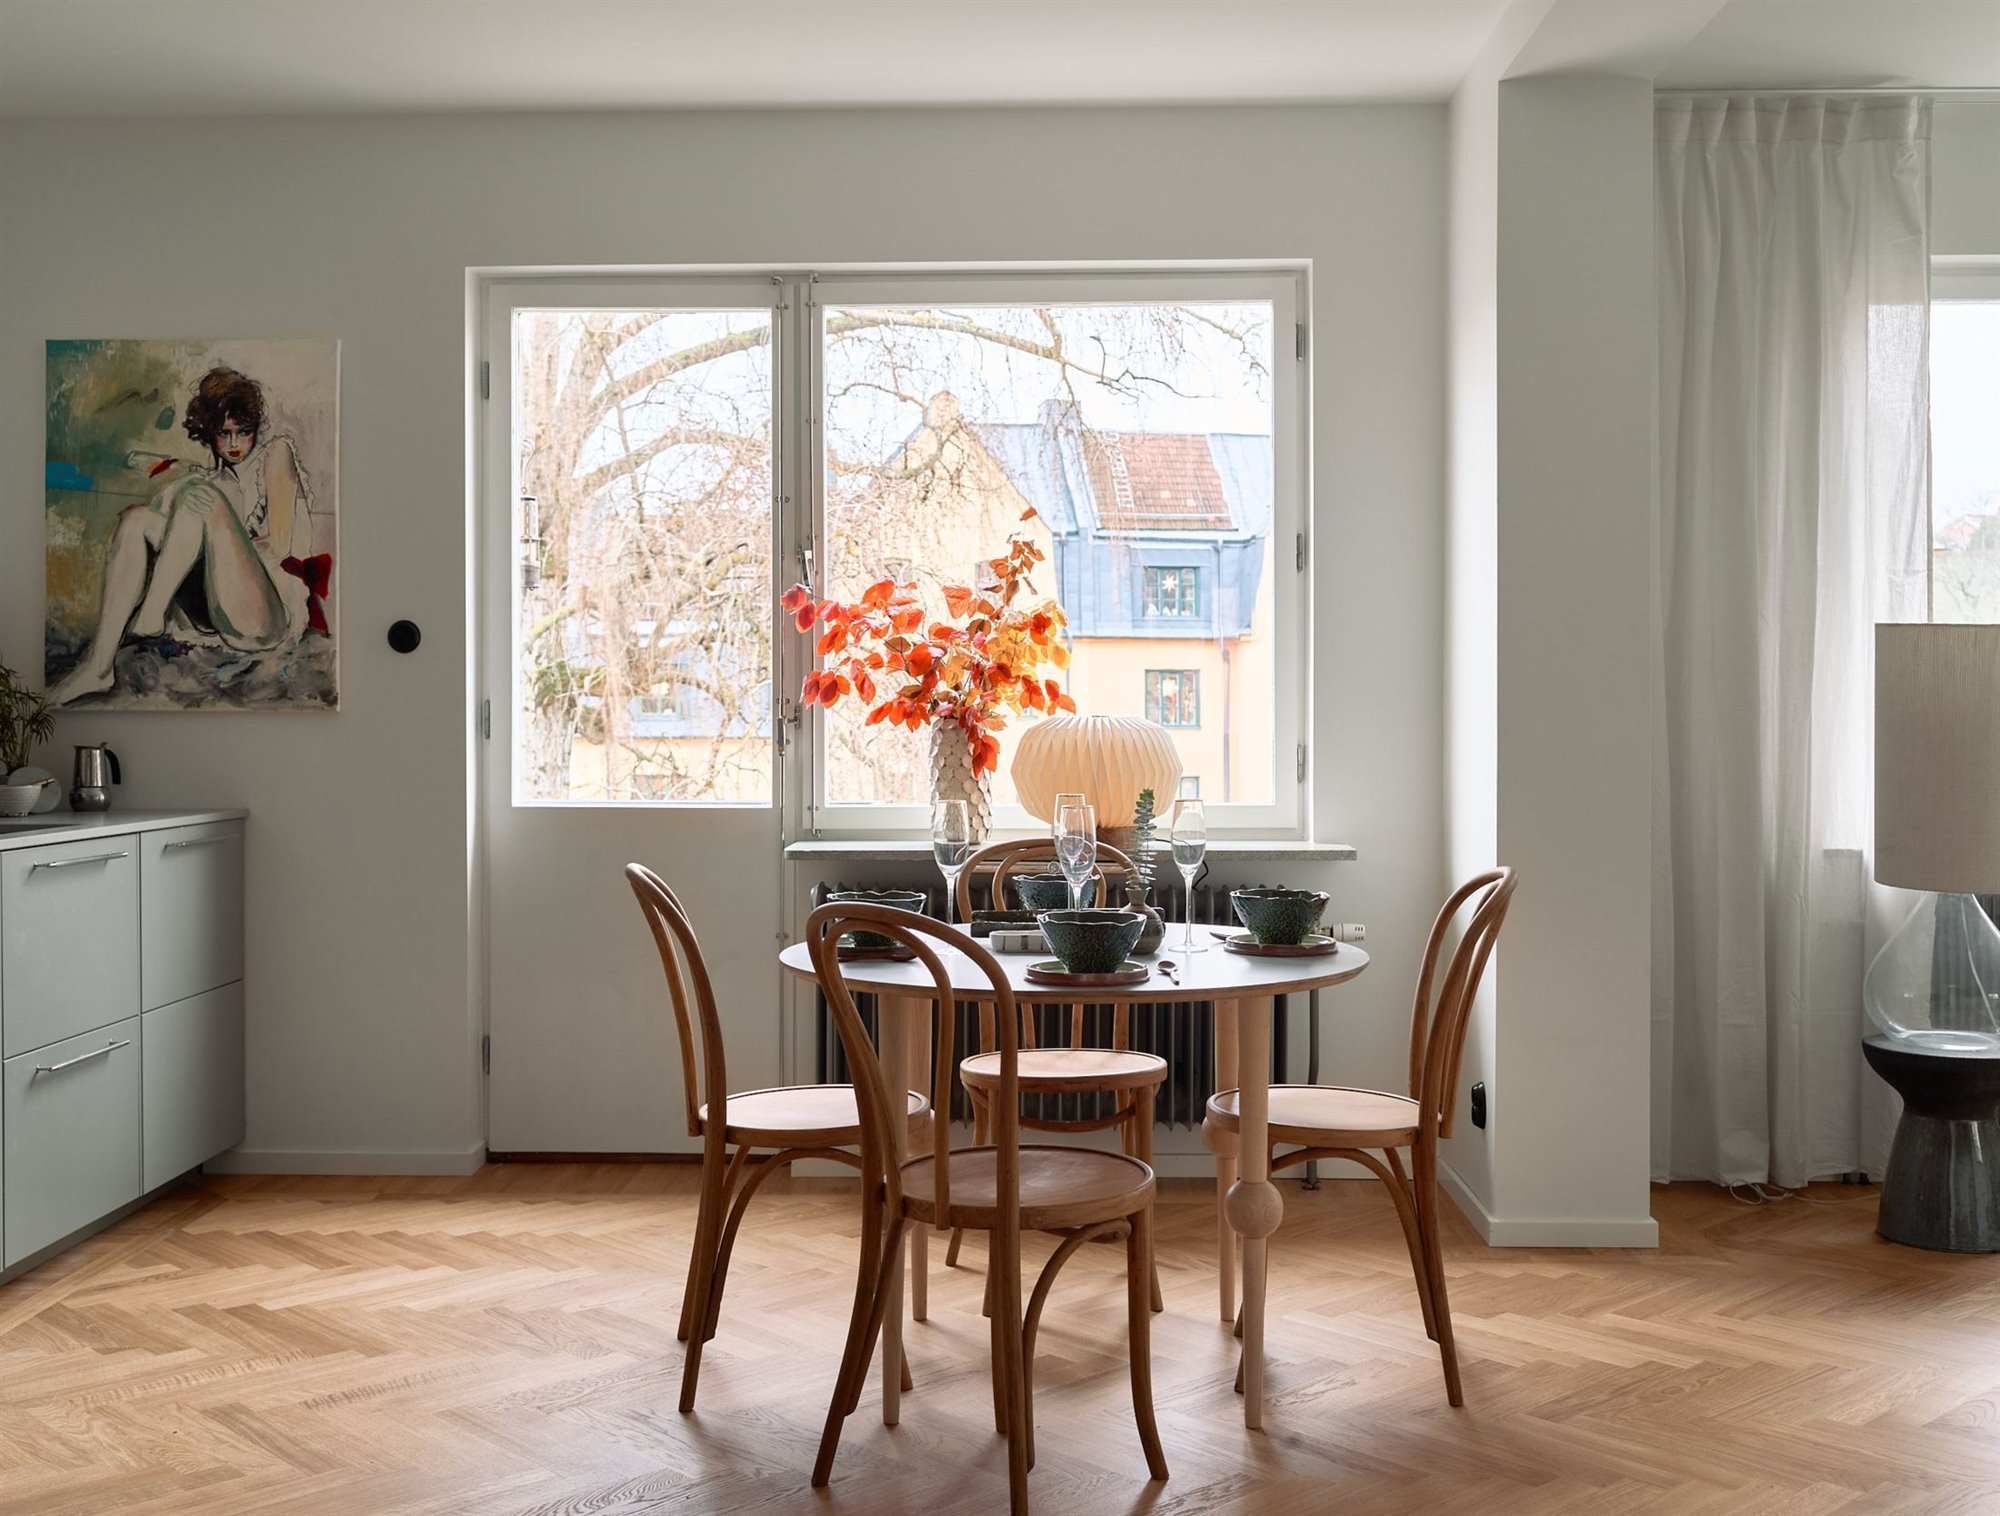 piso-en-suecia-con-interiores-de-estilo-nordico-comedor-con-mesa-redonda-y-silla-junto-a-la-ventana 62a98179 2000x1516